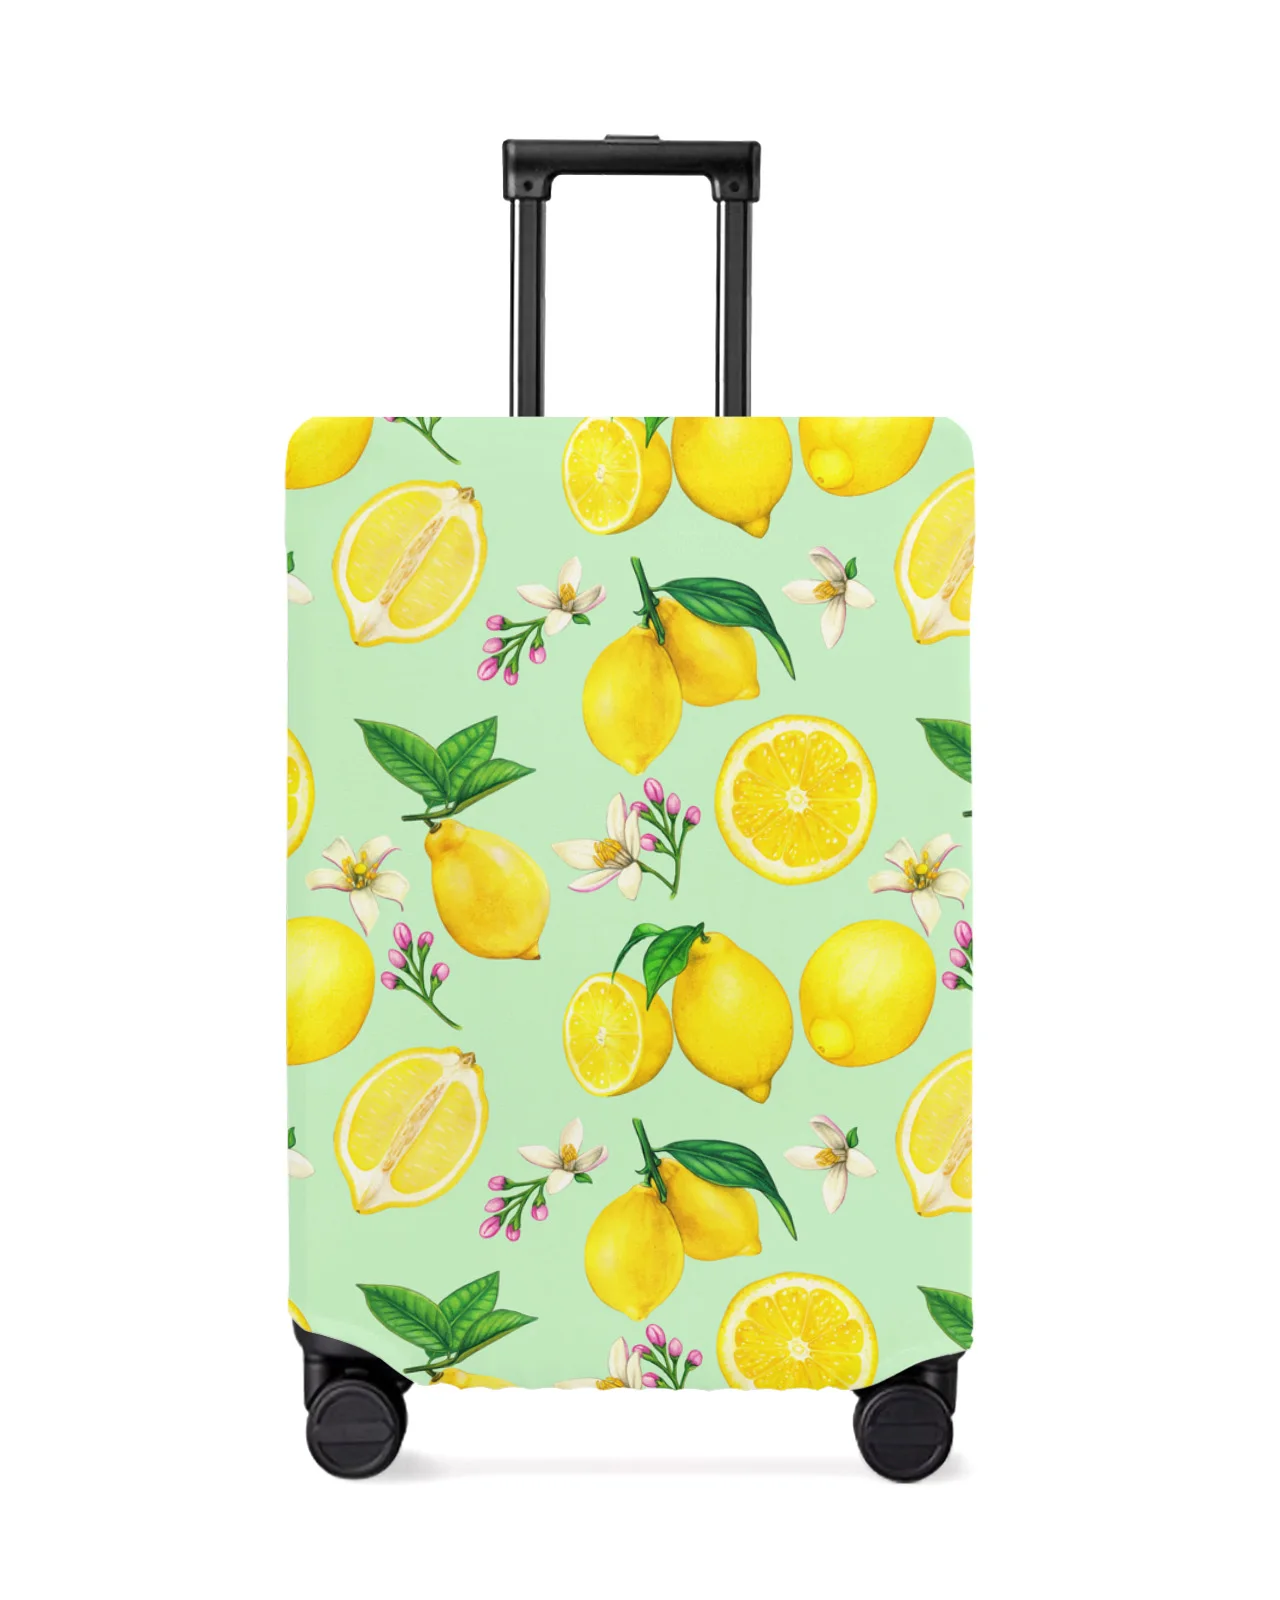 juste-de-protection-de-bagage-de-voyage-fleur-de-citron-d'ete-accessoires-de-valise-etui-anti-poussiere-elastique-manchon-de-protection-18-32